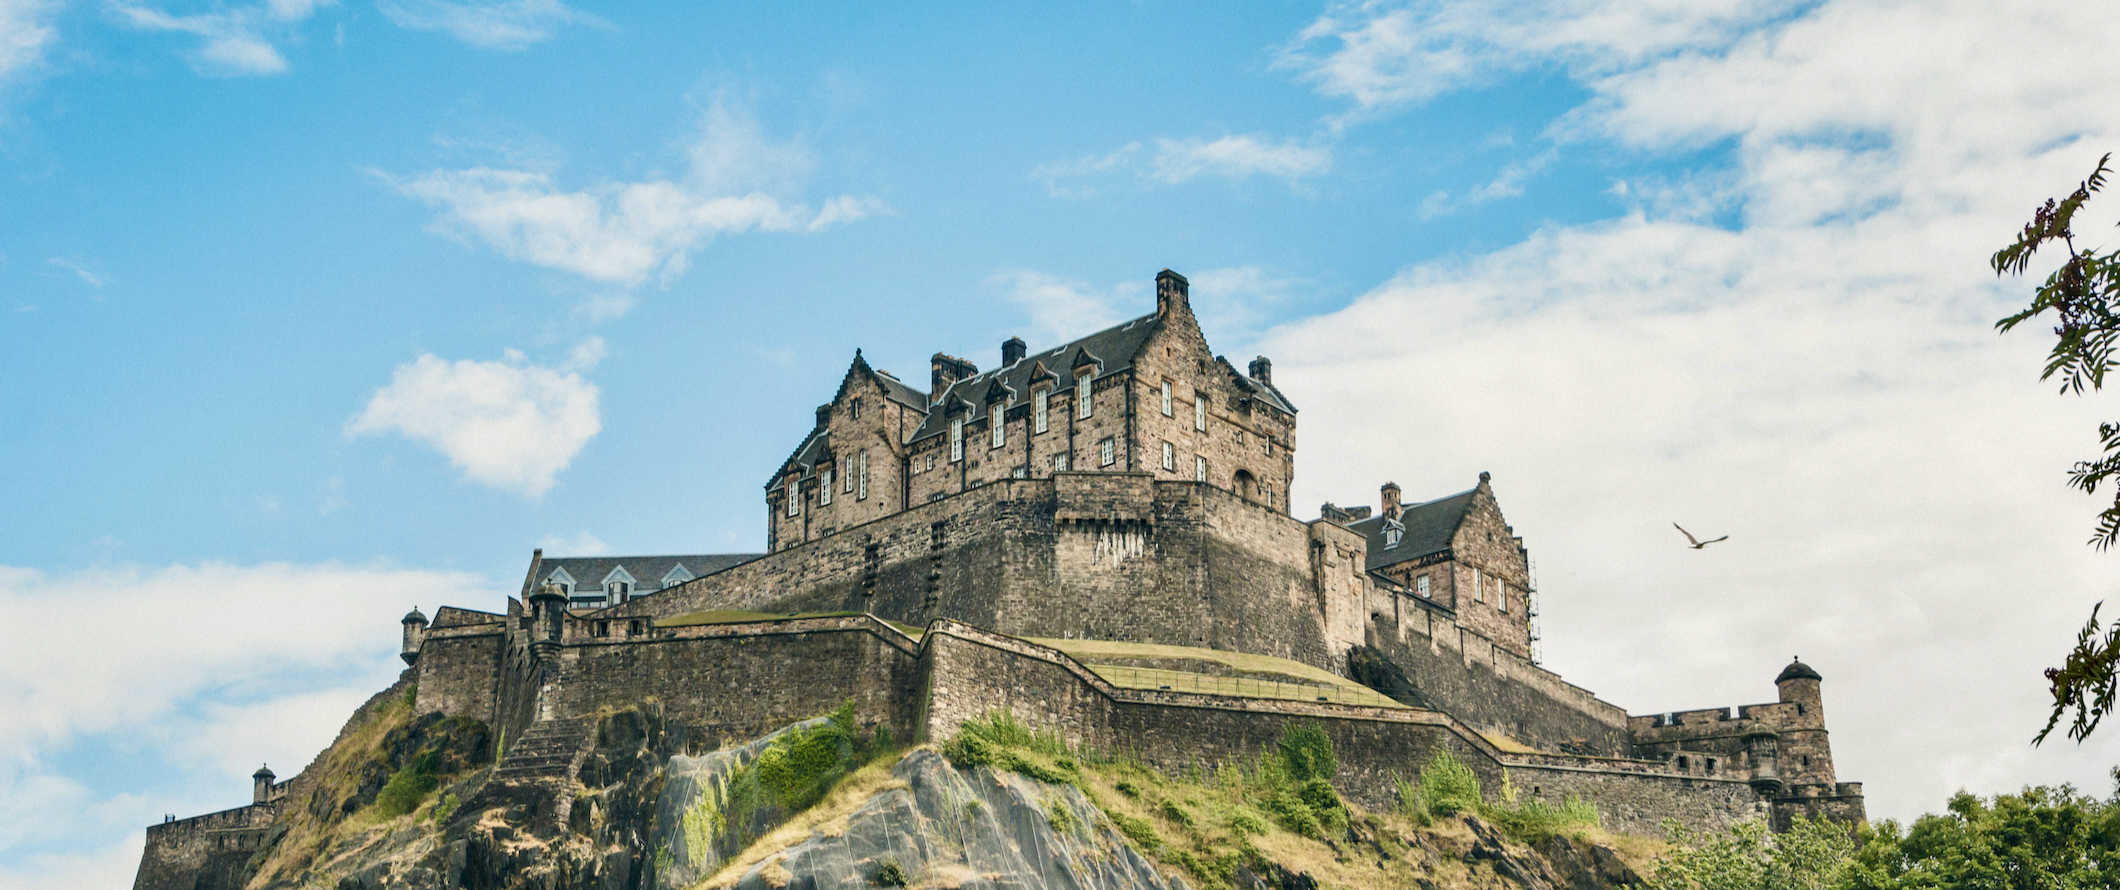 Histórico Castelo de Edimburgo com vista para a cidade em um dia ensolarado